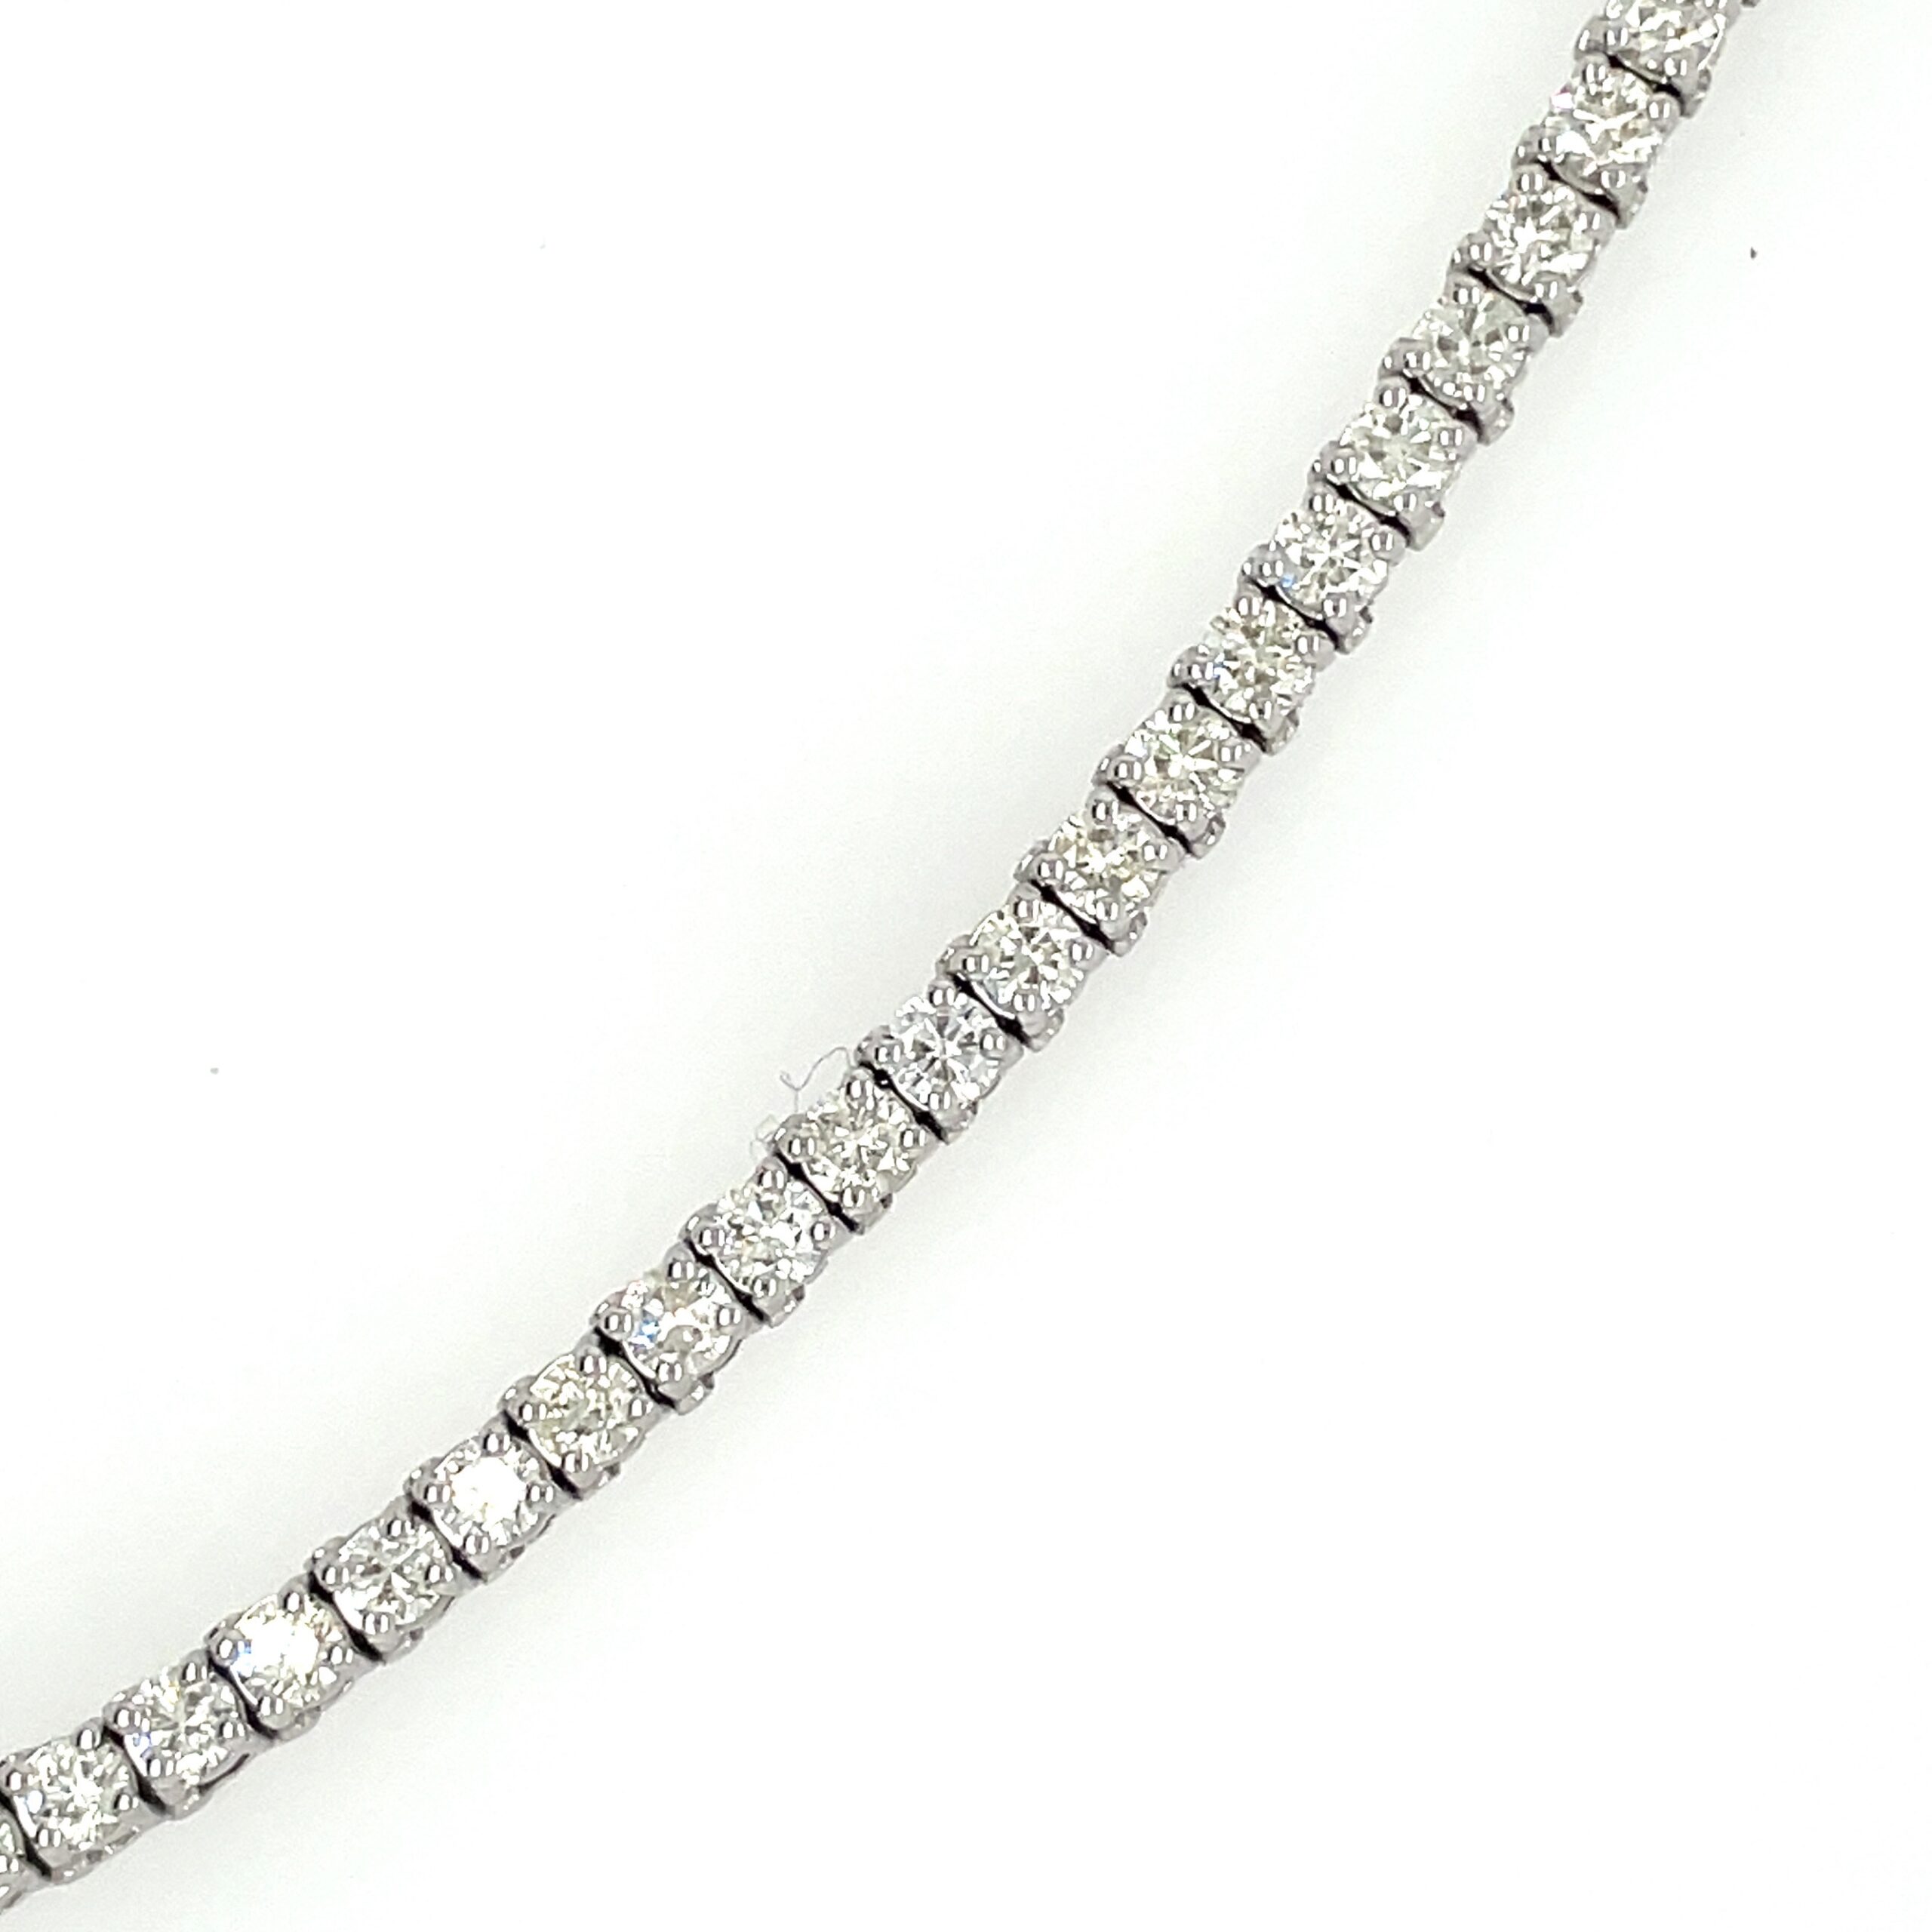 Five Carat Diamond Tennis Bracelet - Ed & Ethel's Fine Jewelry